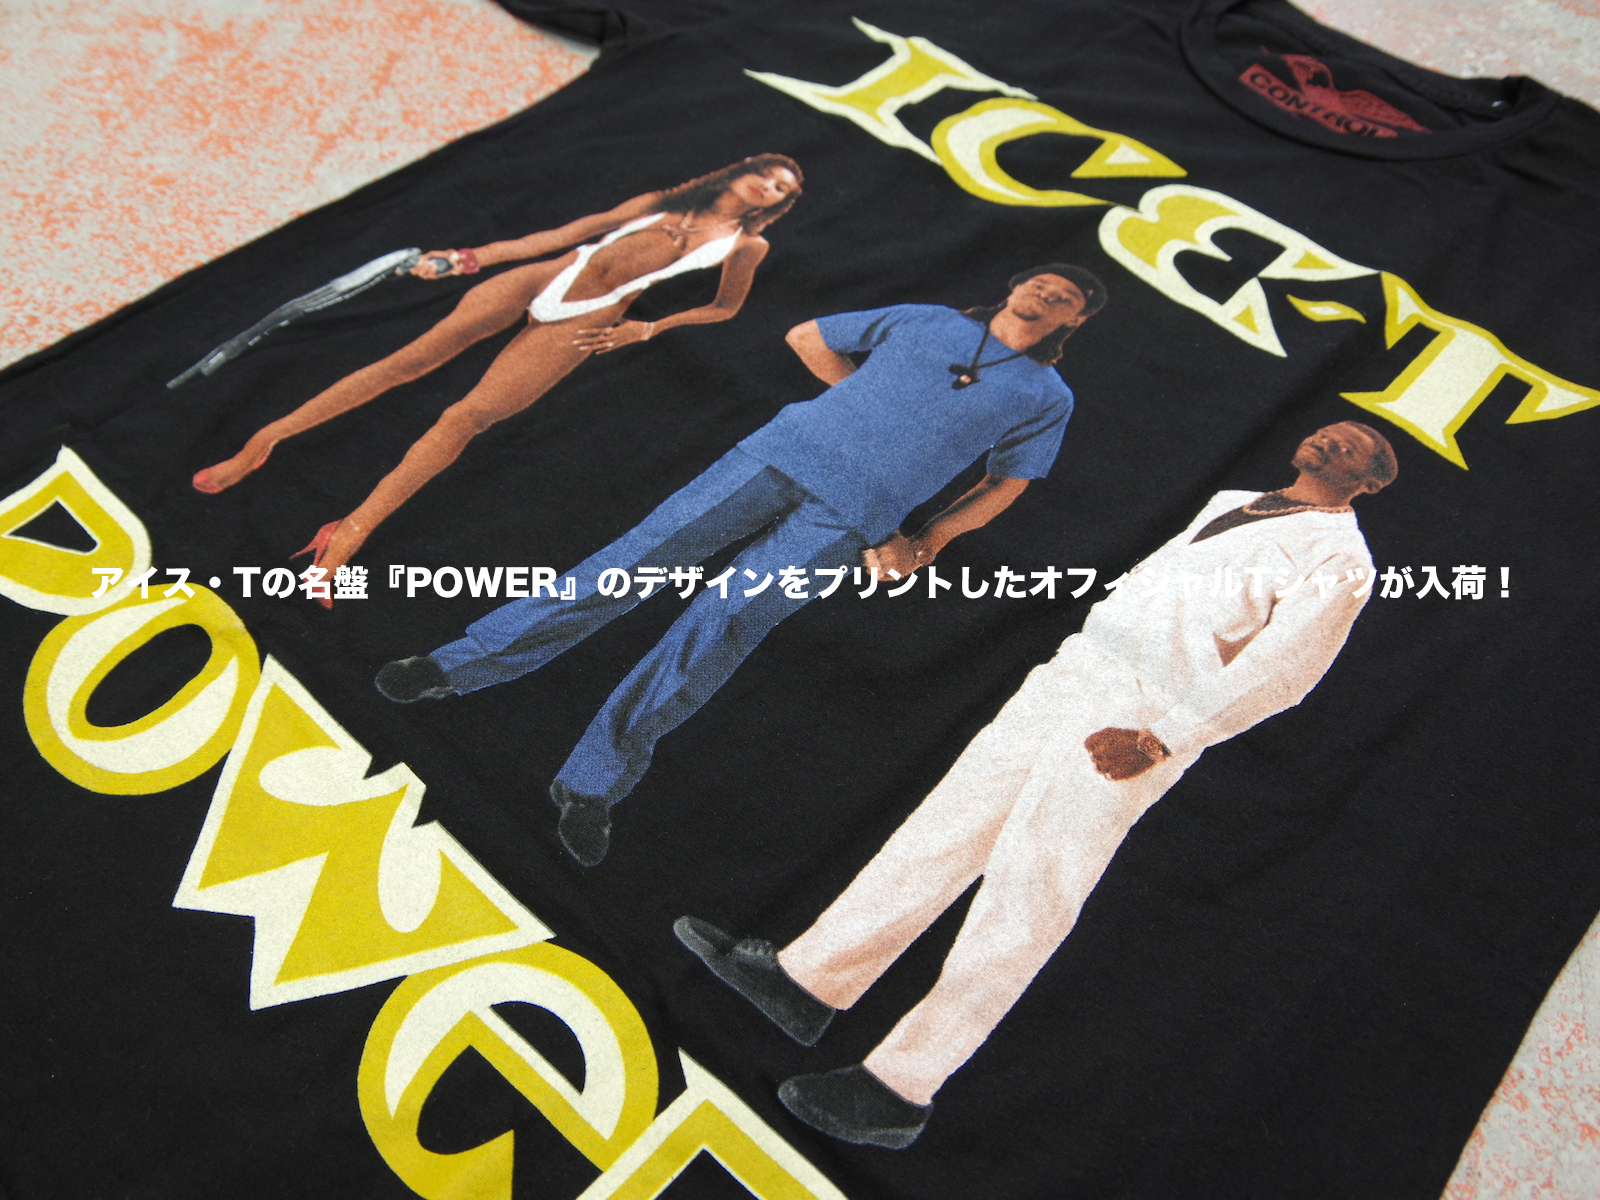 アイス・T の名盤『POWER』のデザインをプリントしたオフィシャルTシャツが入荷！